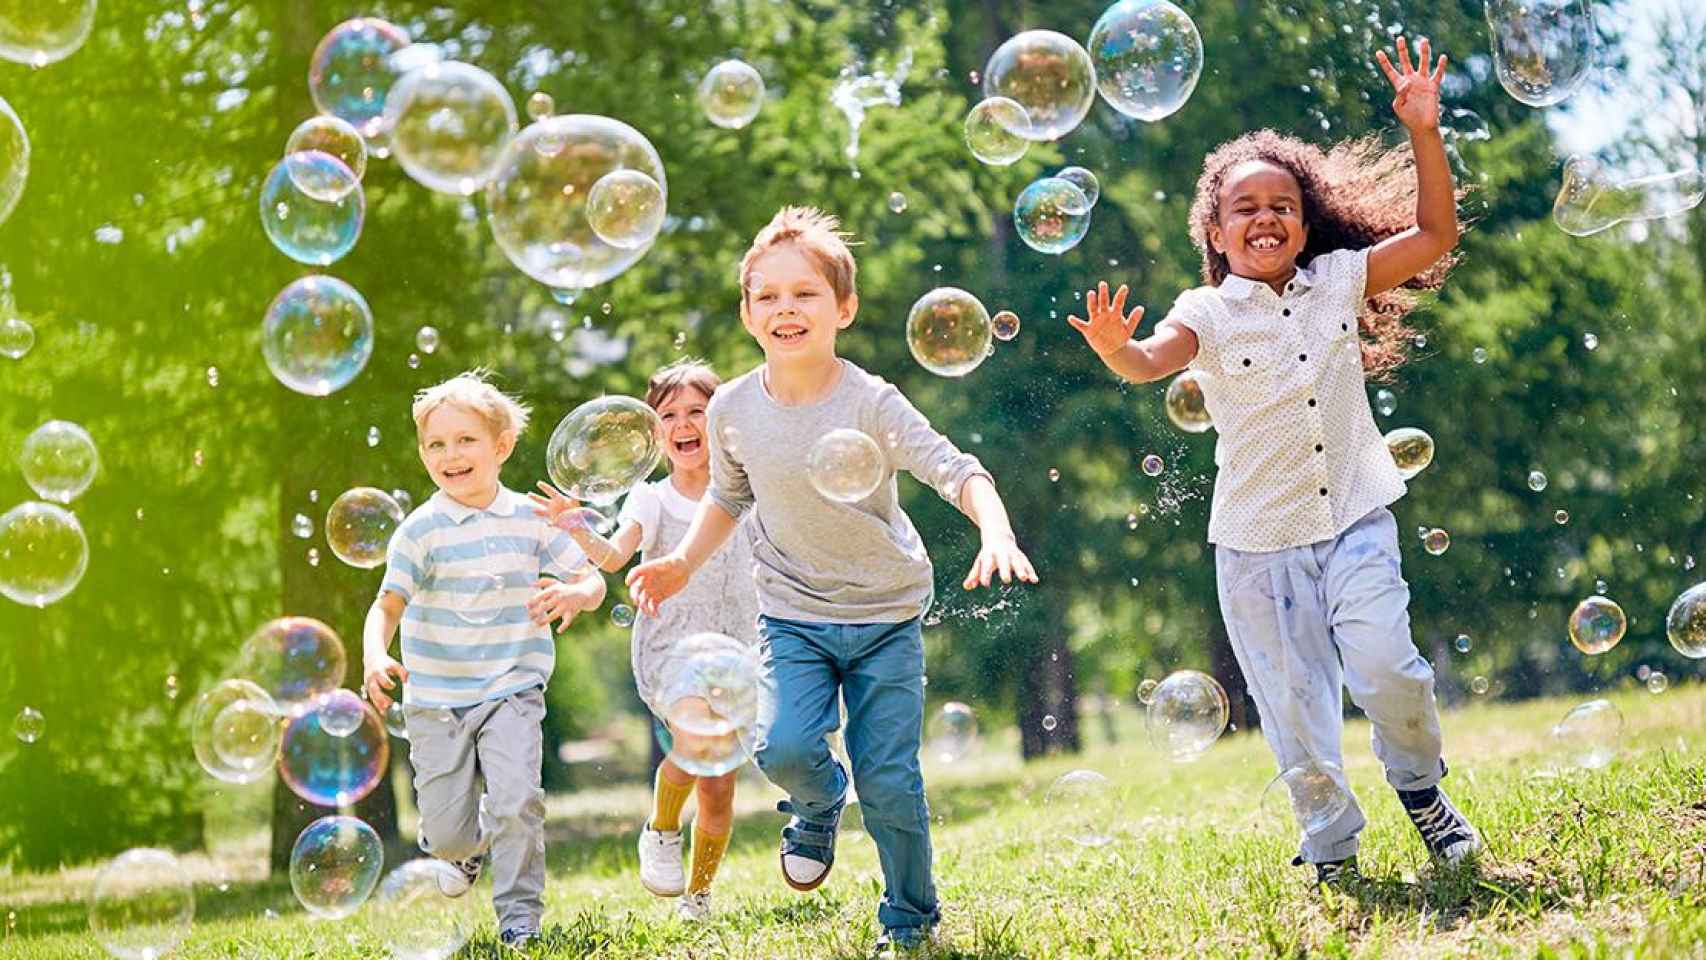 Las actividades de verano contribuyen al bienestar y a la educación de niños y jóvenes / Shutterstock